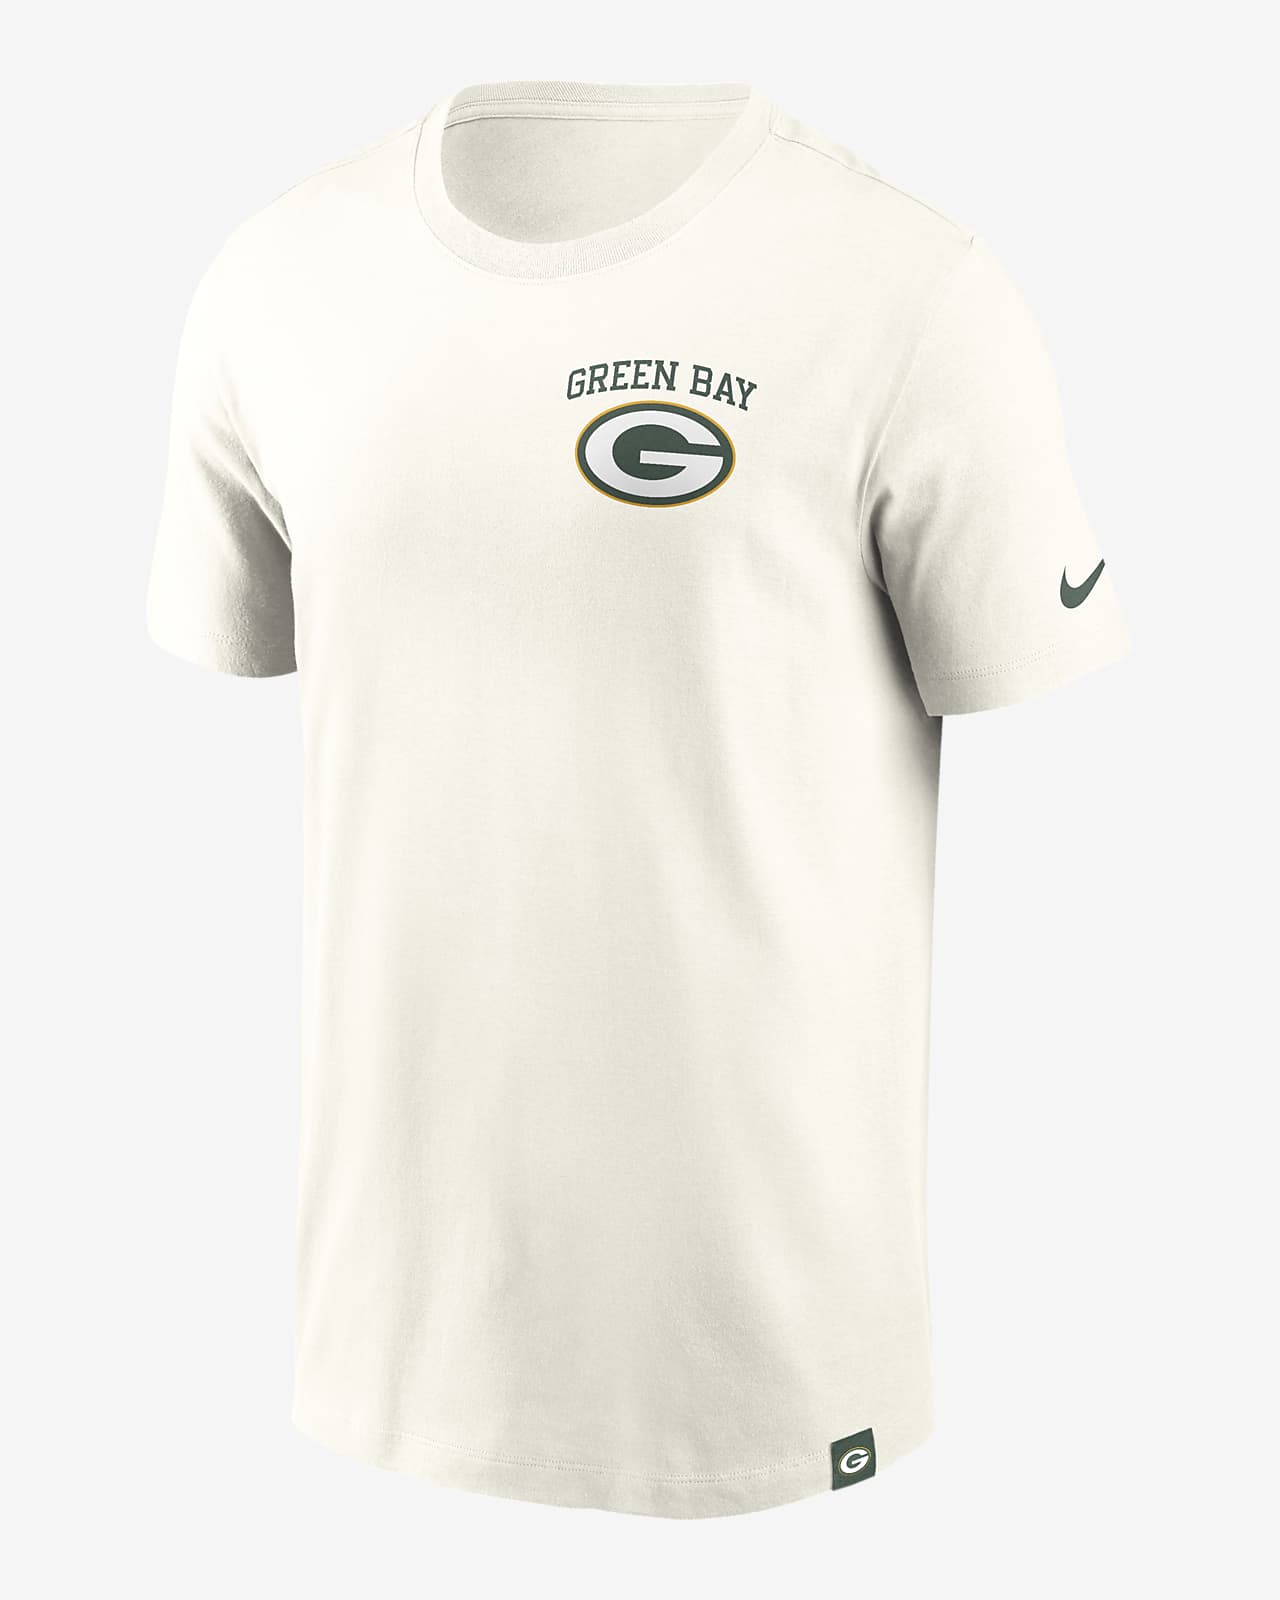 Playera Nike de la NFL para hombre Green Bay Packers Blitz Essential